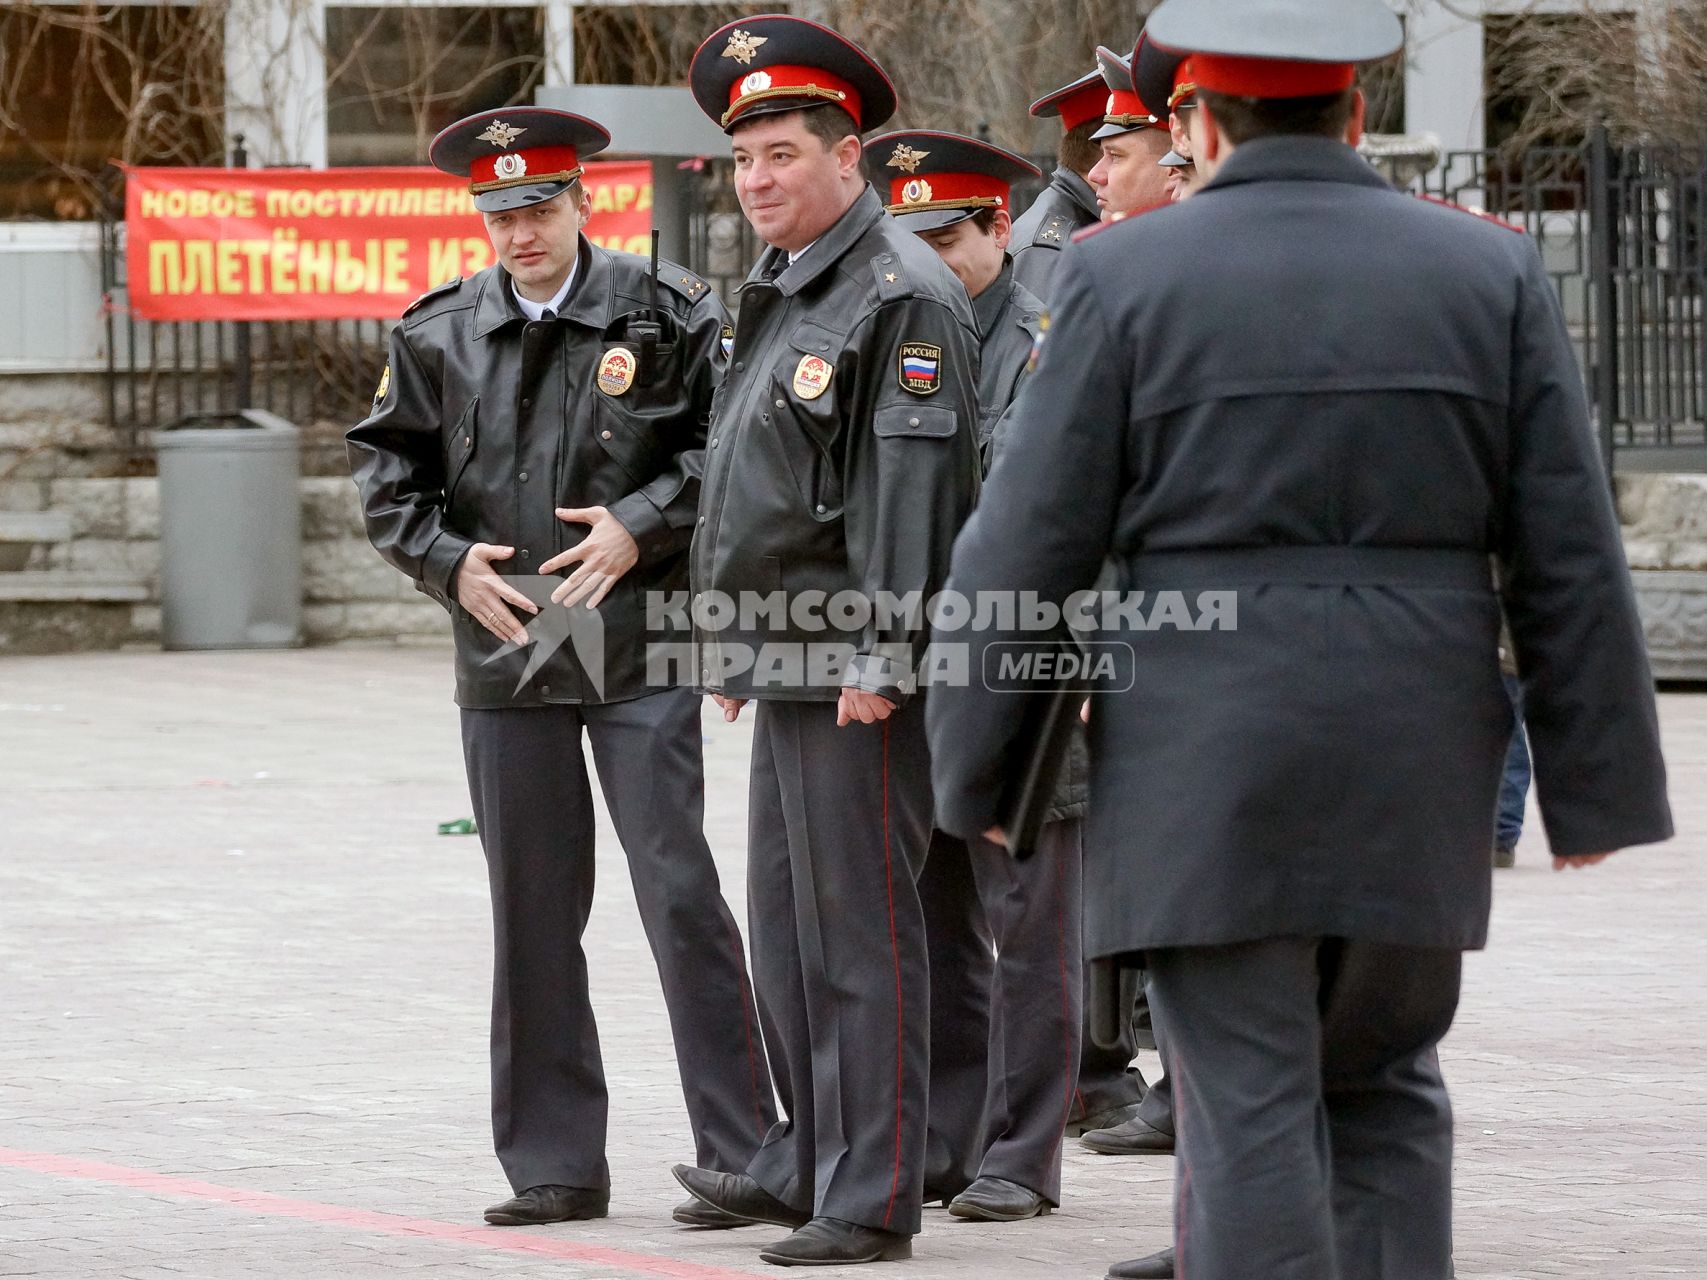 Празднование 1 мая в Екатеринбурге. На снимке: полицейские на фоне плаката `Новое поступление. Плетеные`.